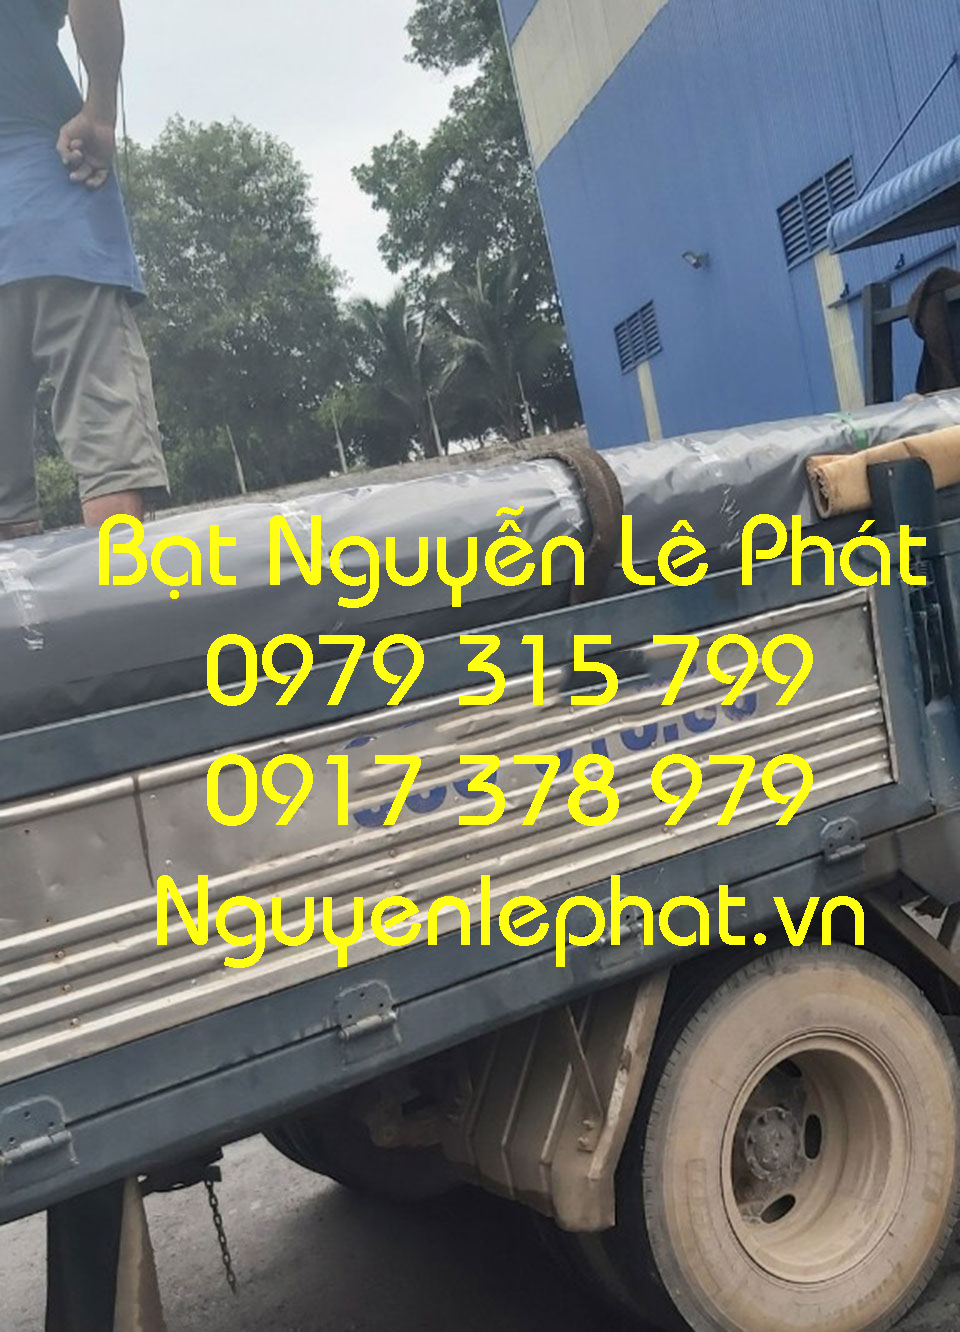 Đơn vị địa chỉ bán bạt uy tín giá rẻ lót ao hồ nuôi cá tại Long Khánh